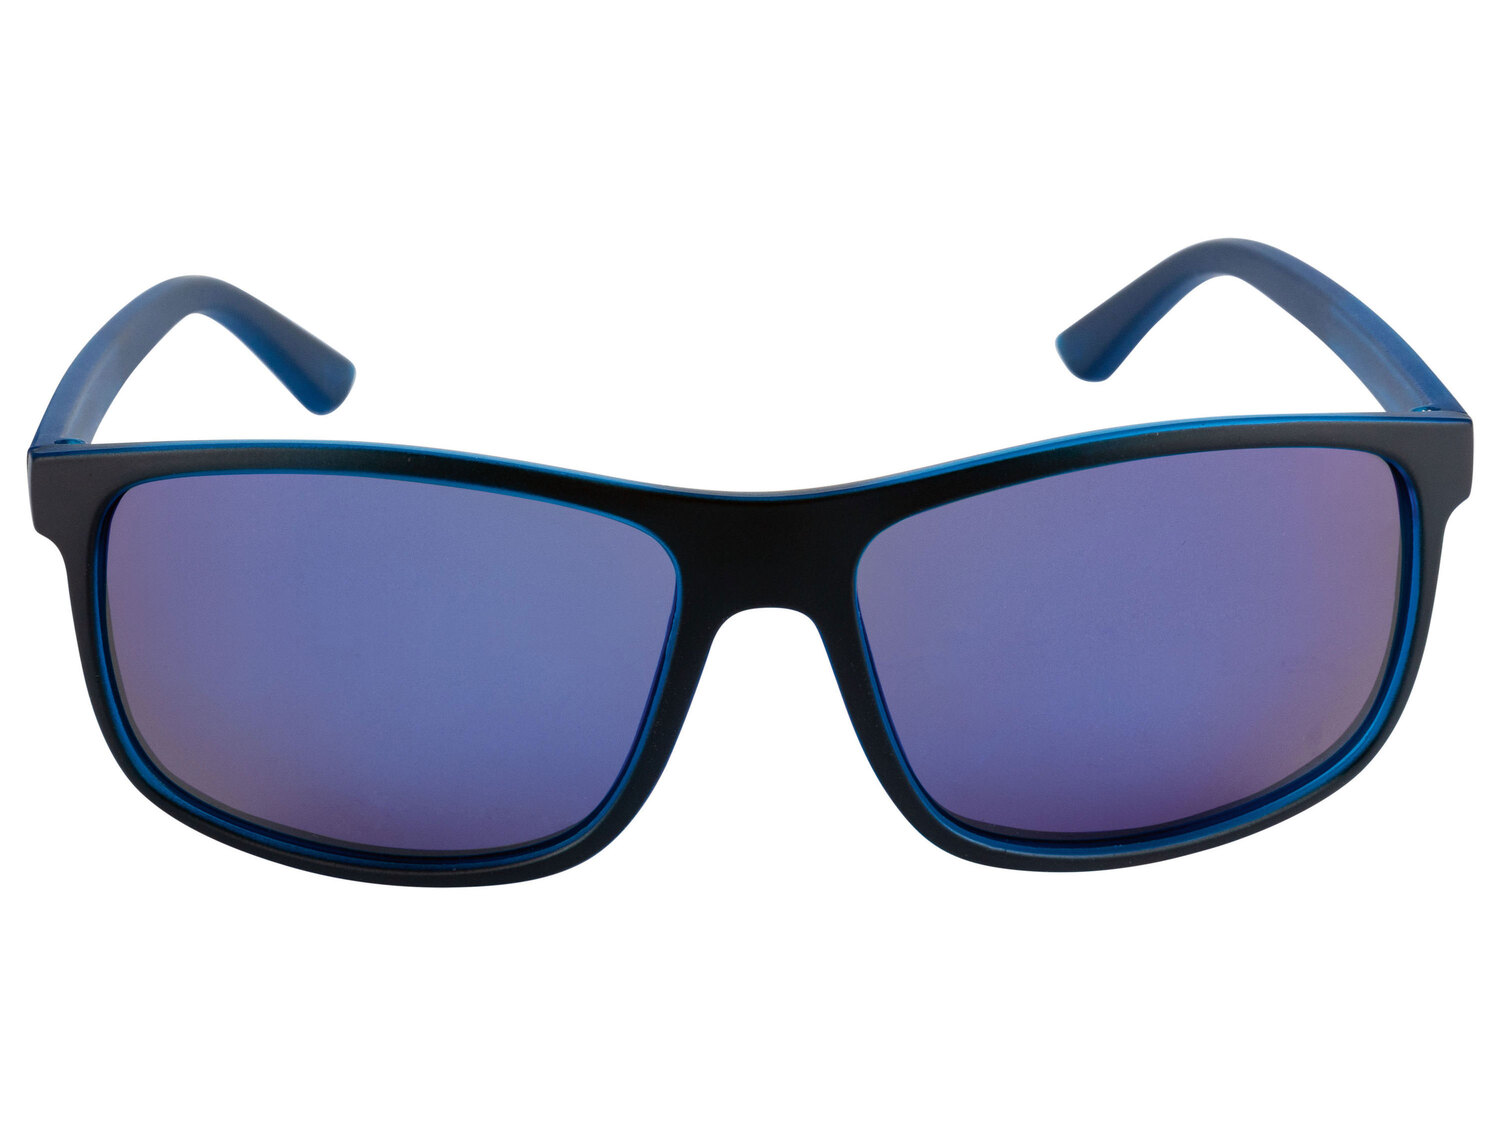 Okulary przeciwsłoneczne , cena 19,99 PLN 
- 100% ochrony UV
- szkła z tworzywa ...